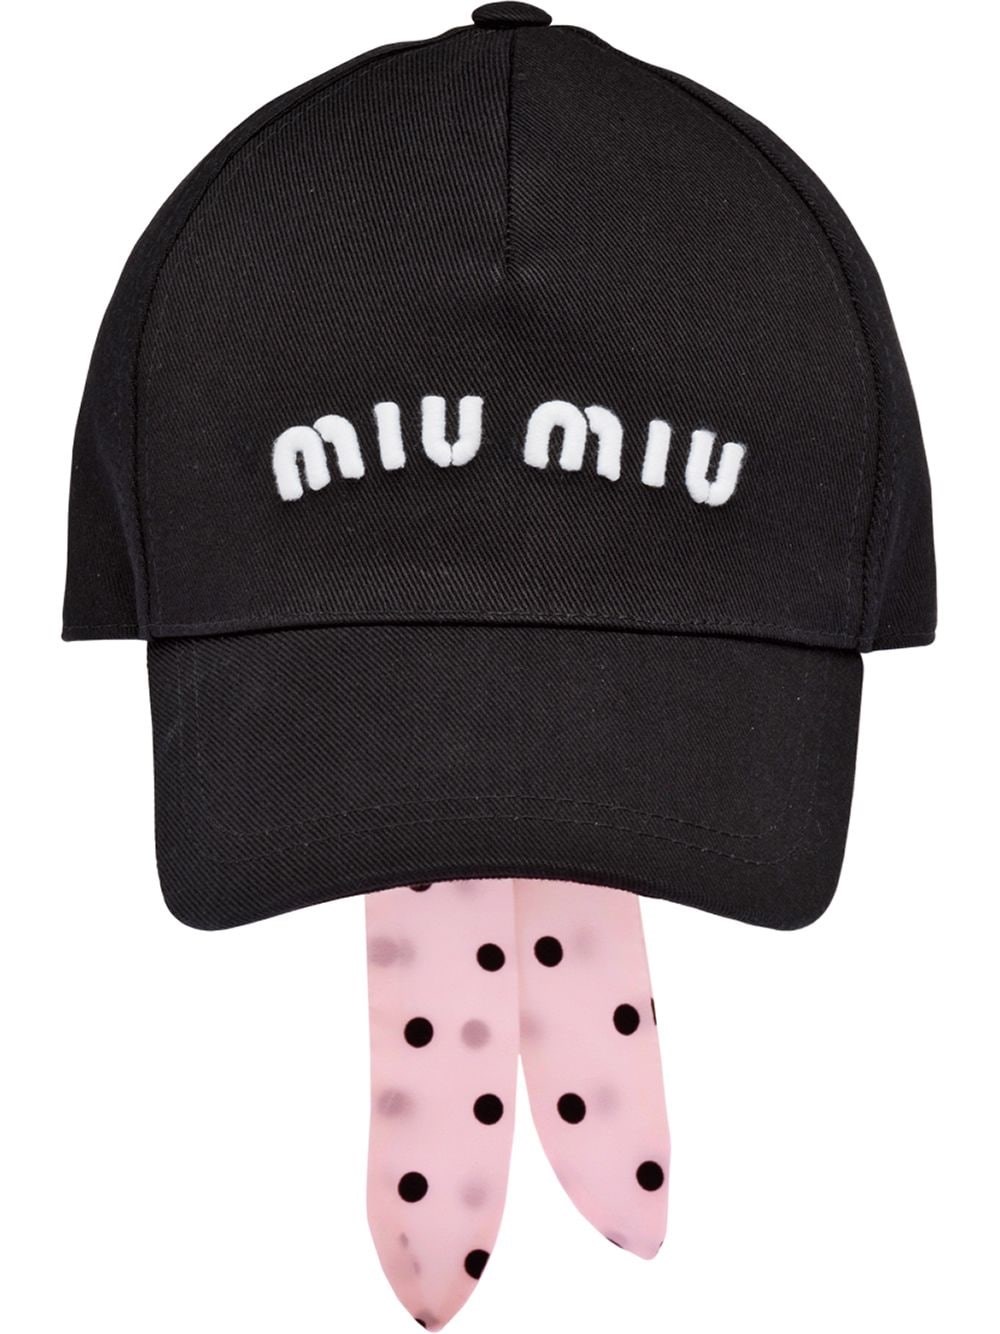 MIU MIU Hats Sale, Up To 70% Off | ModeSens